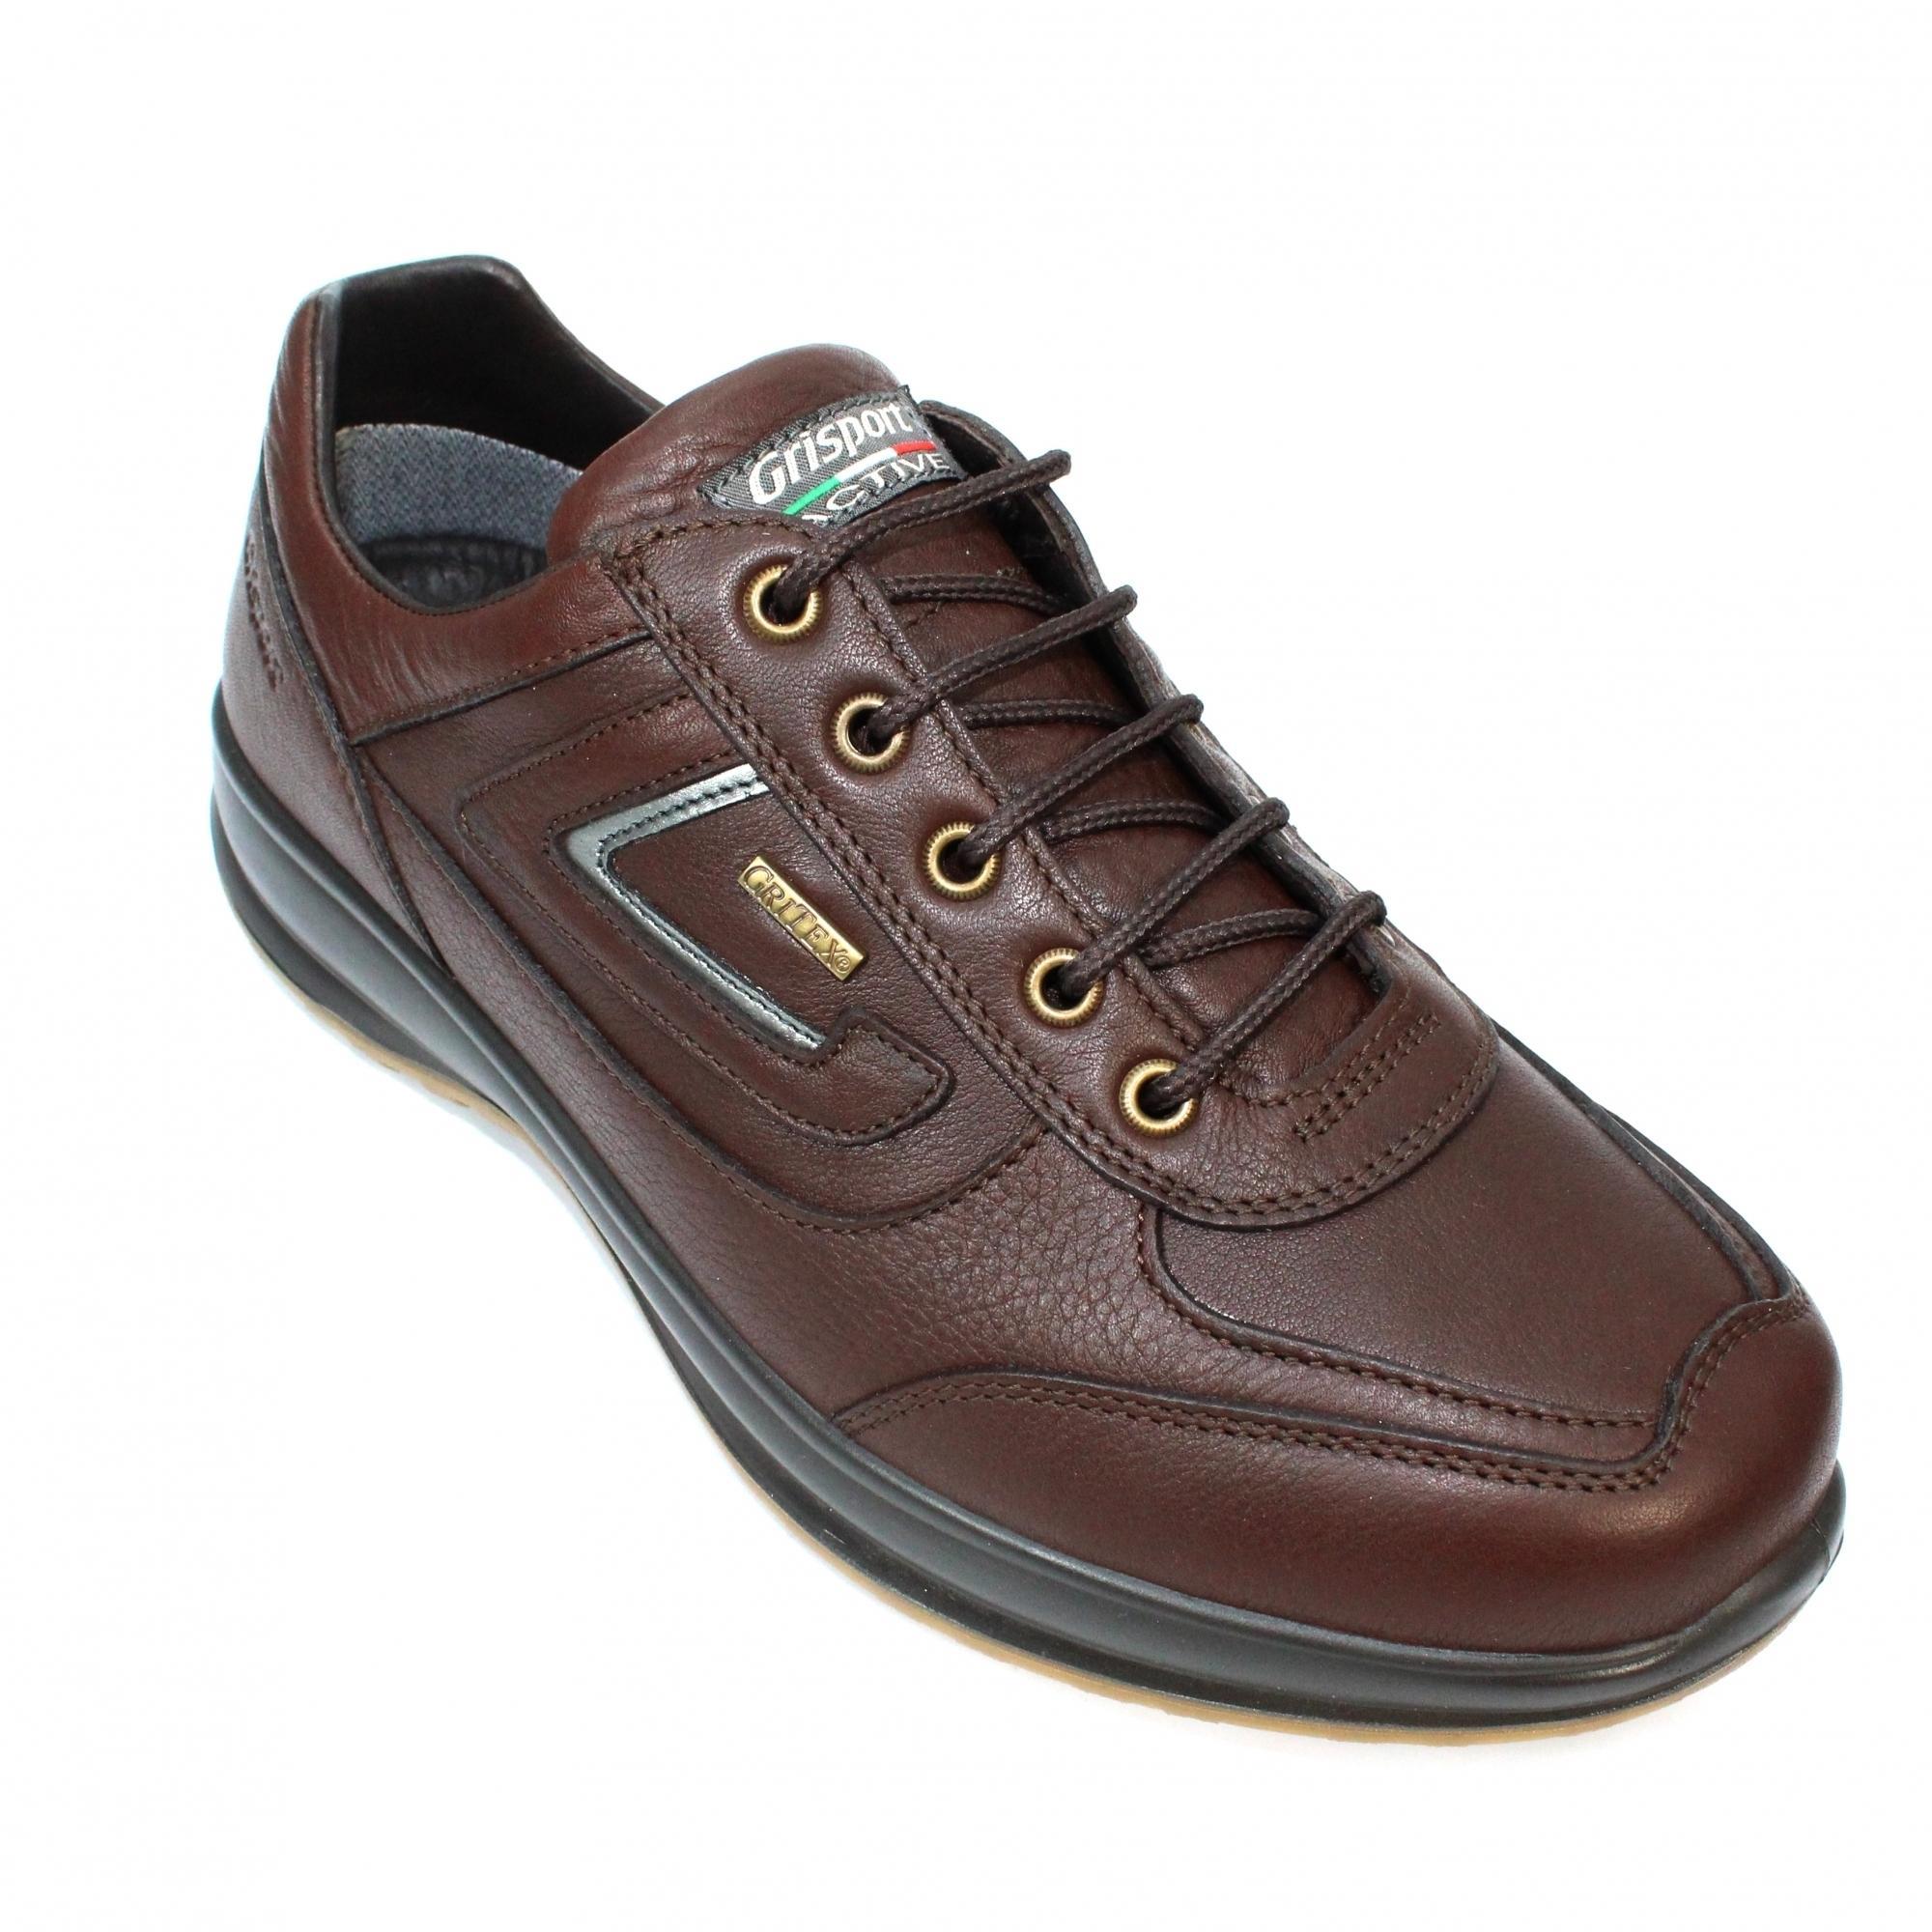 Grisport Mens Airwalker Leather Walking Shoes (Brown) (9 UK)